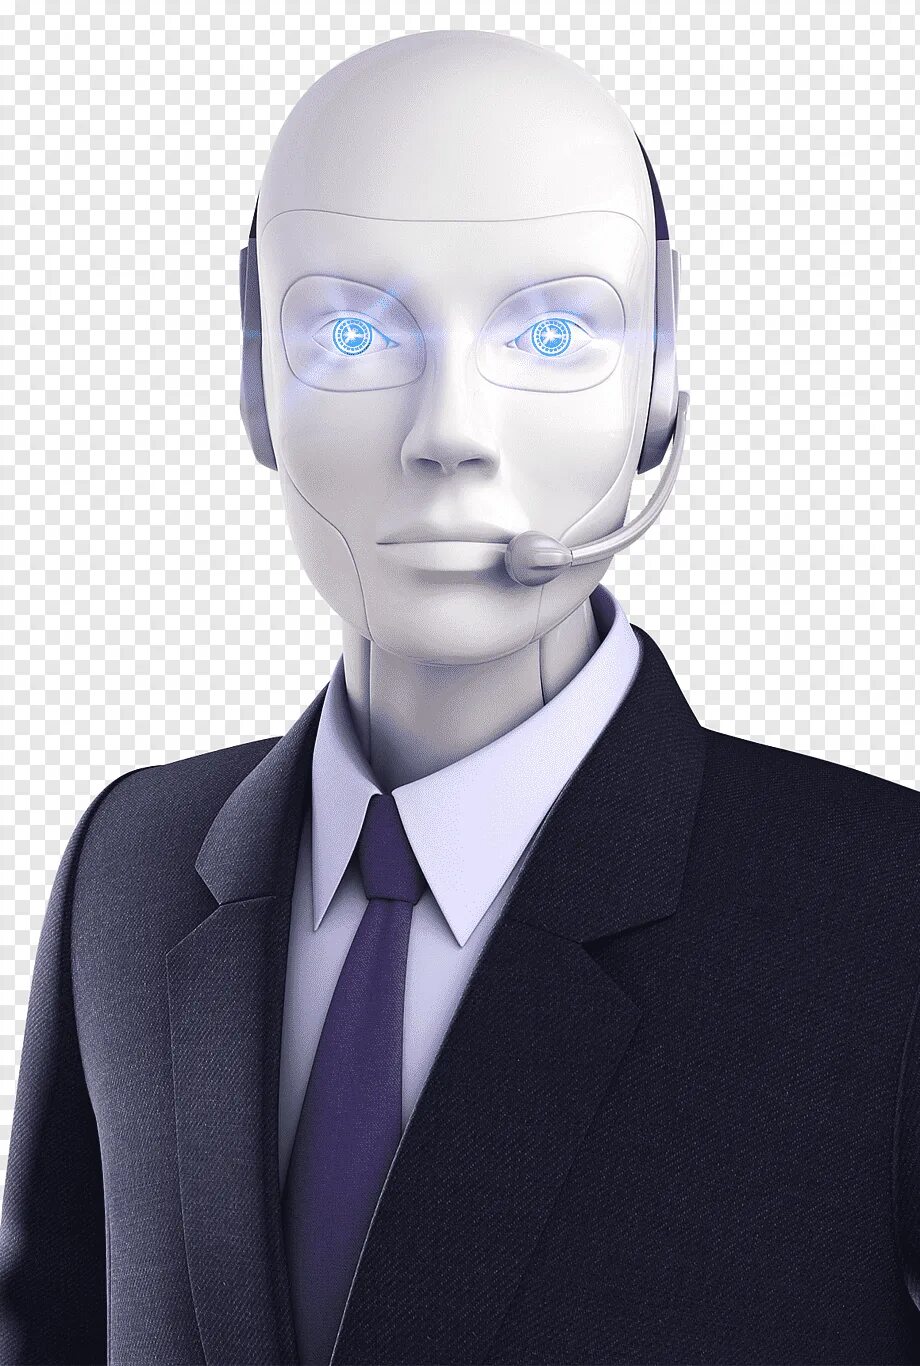 Robot calls. Искусственный интеллект. Робот с искусственным интеллектом. Робот человек. Лицо робота.